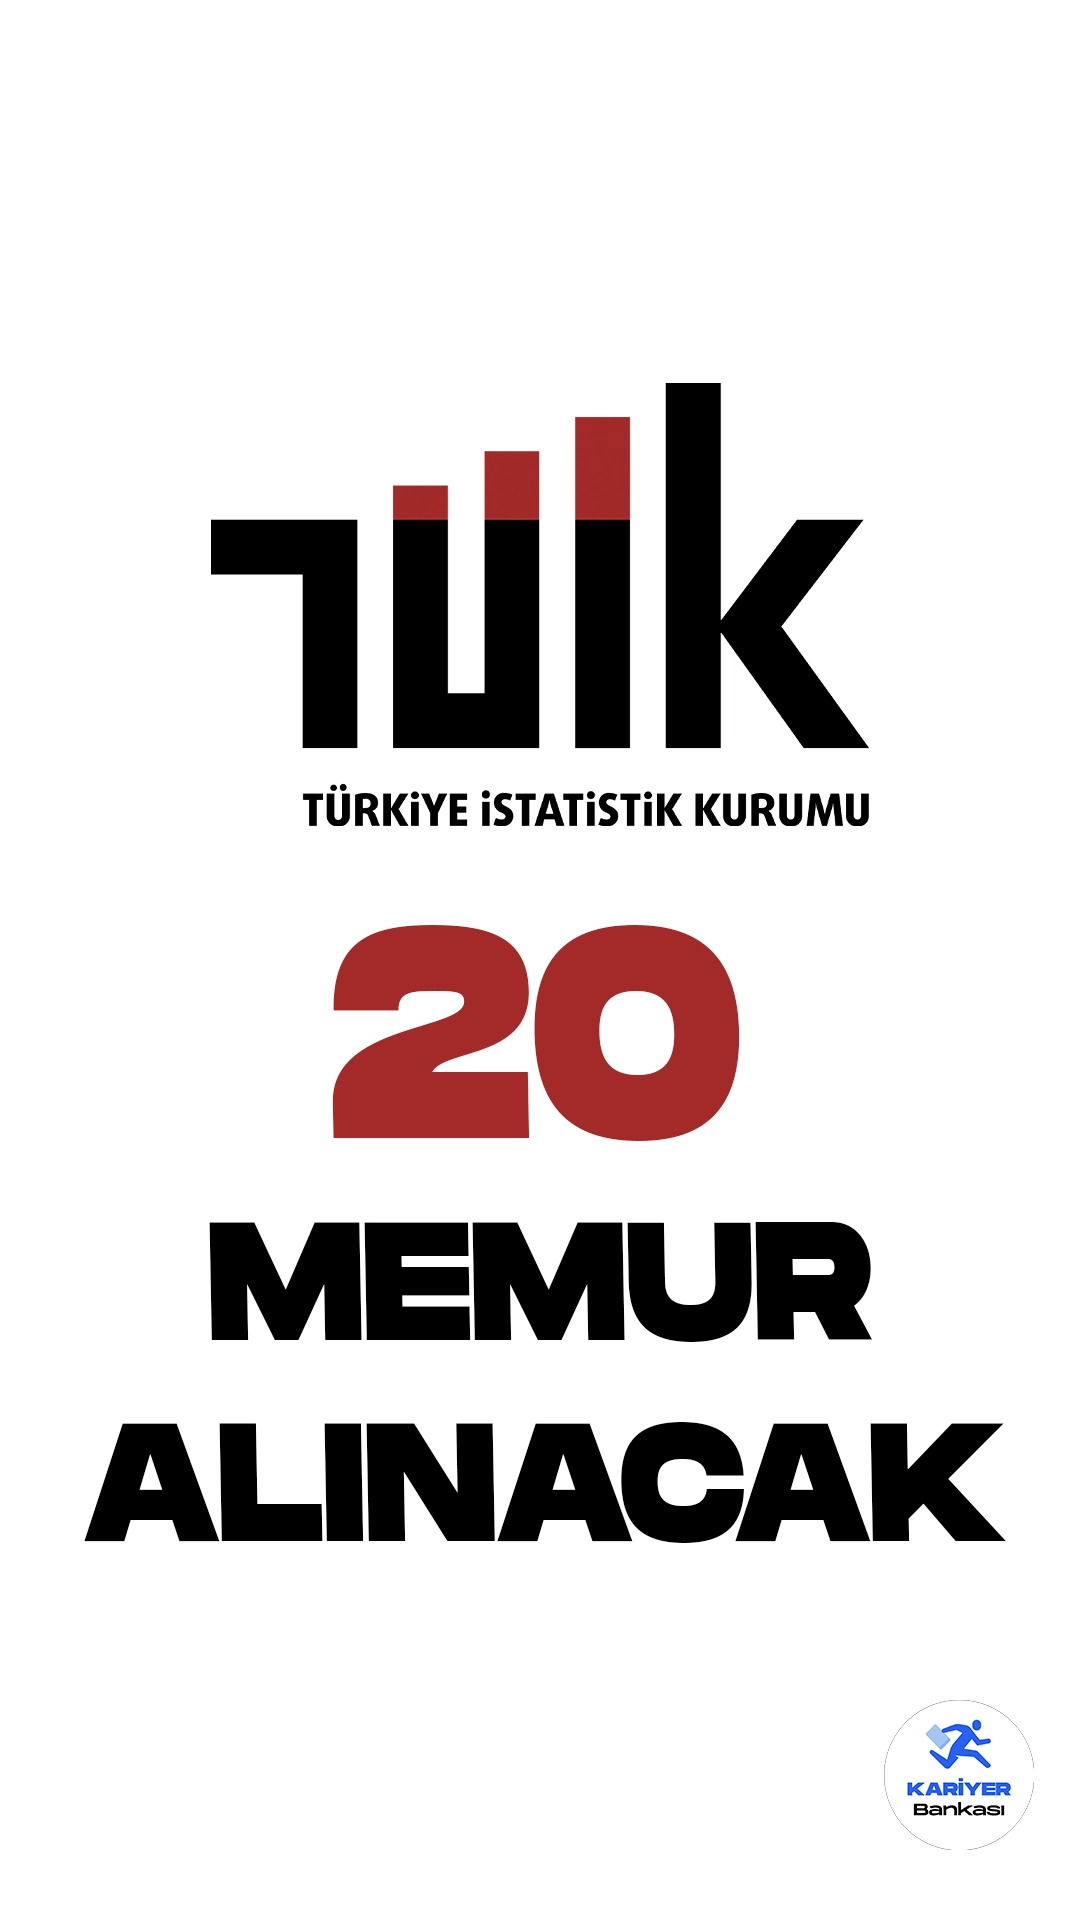 Türkiye İstatistik Kurumu (TÜİK) 20 Memur Alımı Yapacak.